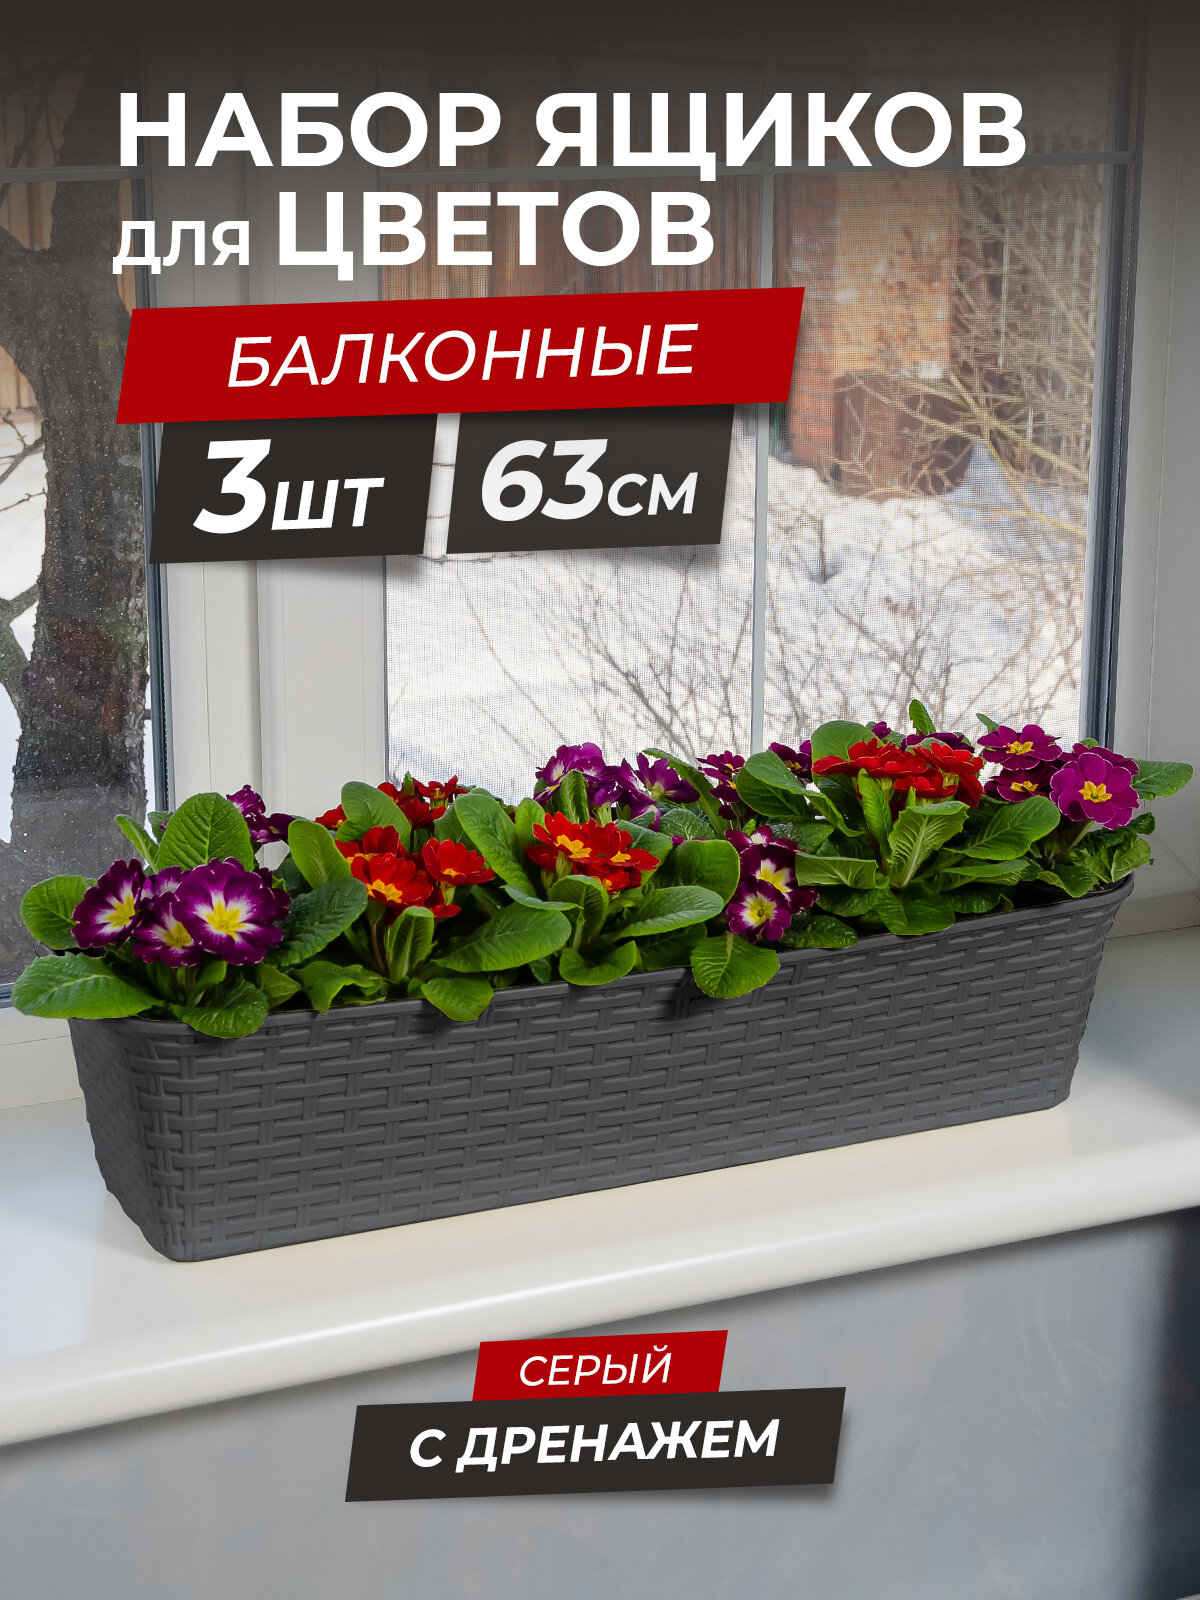 Балконный ящик для цветов Ротанг 63см с дренажной вкладкой, набор 3шт, цвет серый / горшок цветочный